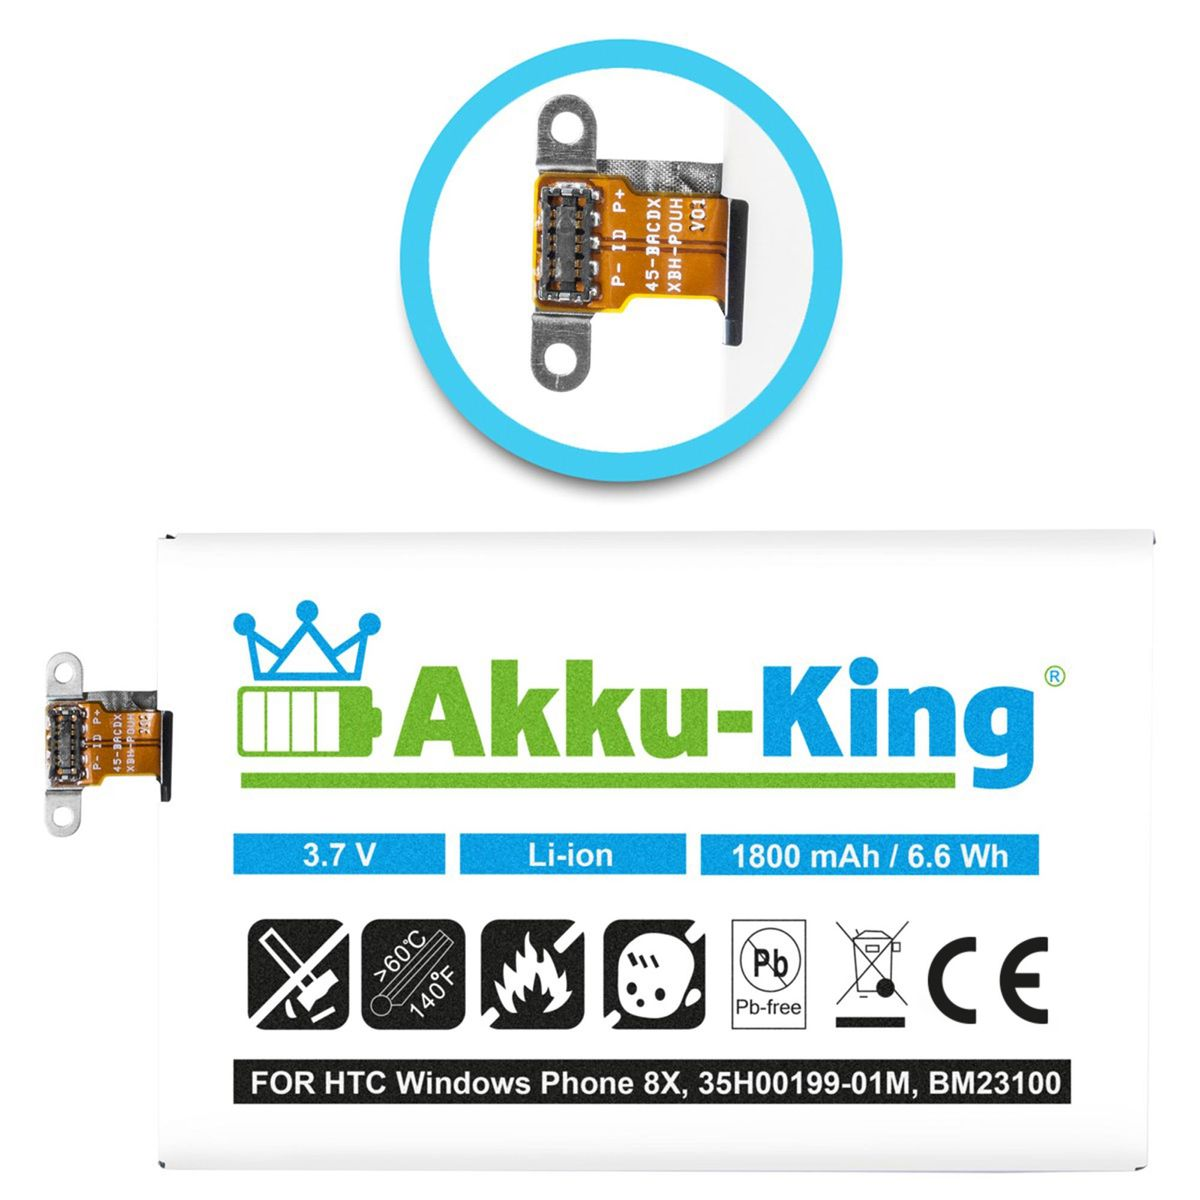 AKKU-KING Akku 1800mAh kompatibel Handy-Akku, 35H00199-01M 3.7 HTC Volt, mit Li-Ion